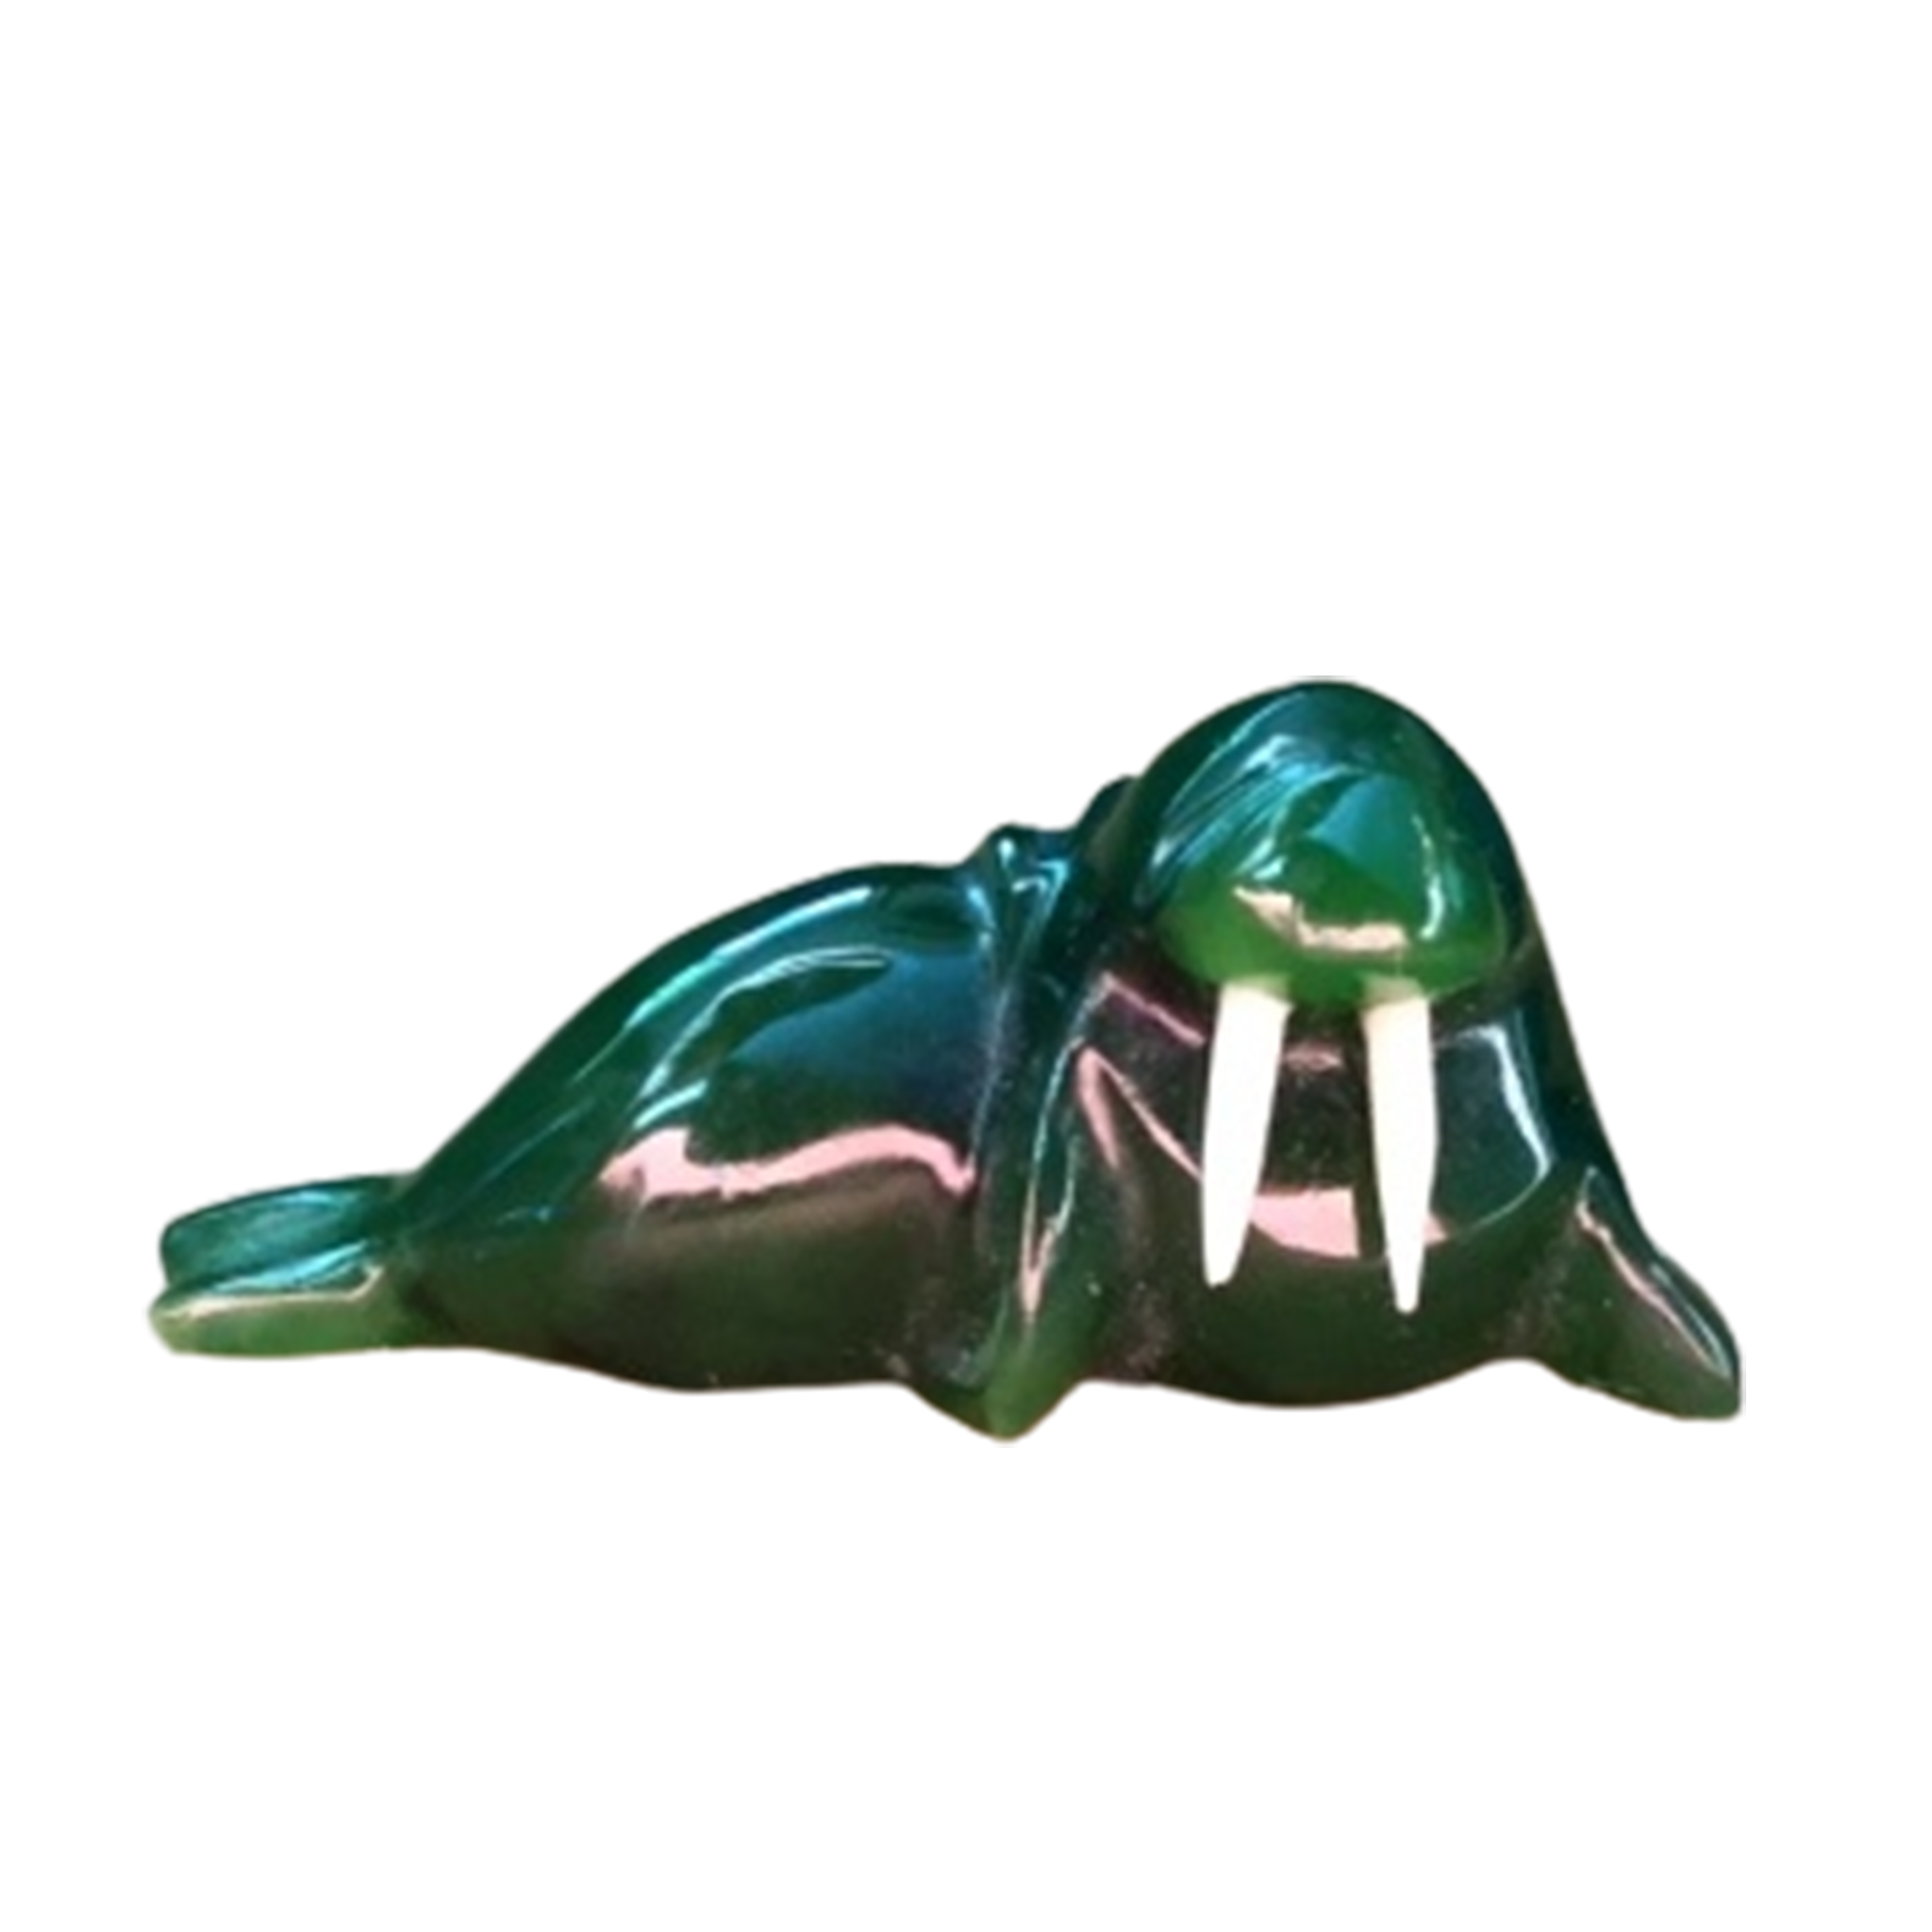 Jade Walrus